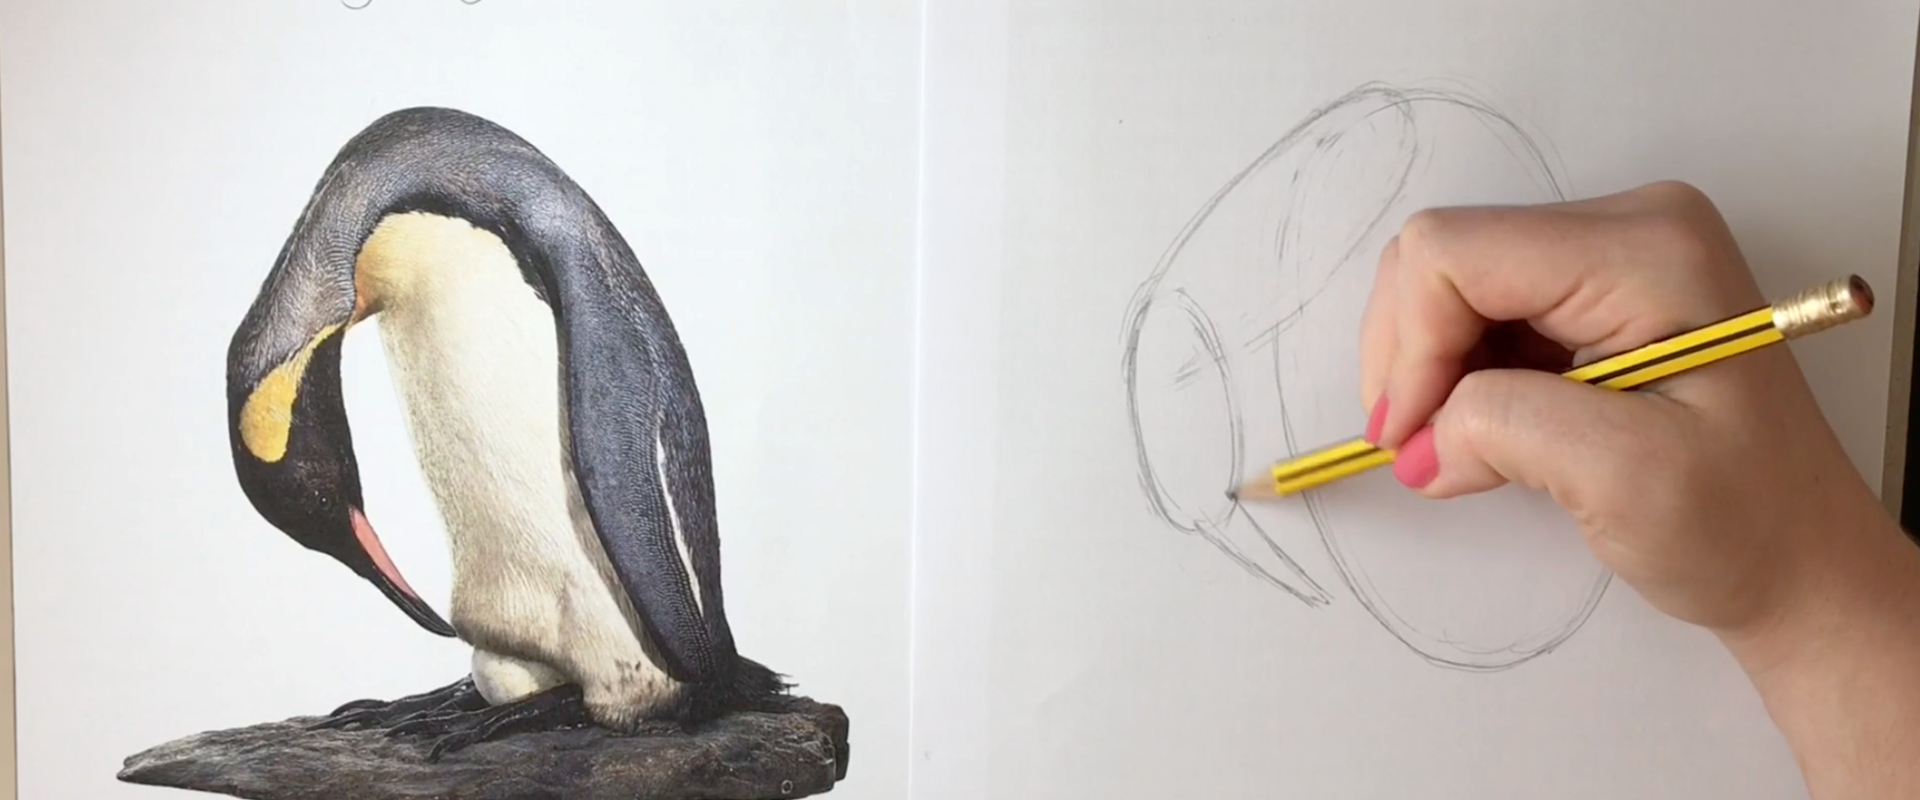 Penguin Speed Draw 1 